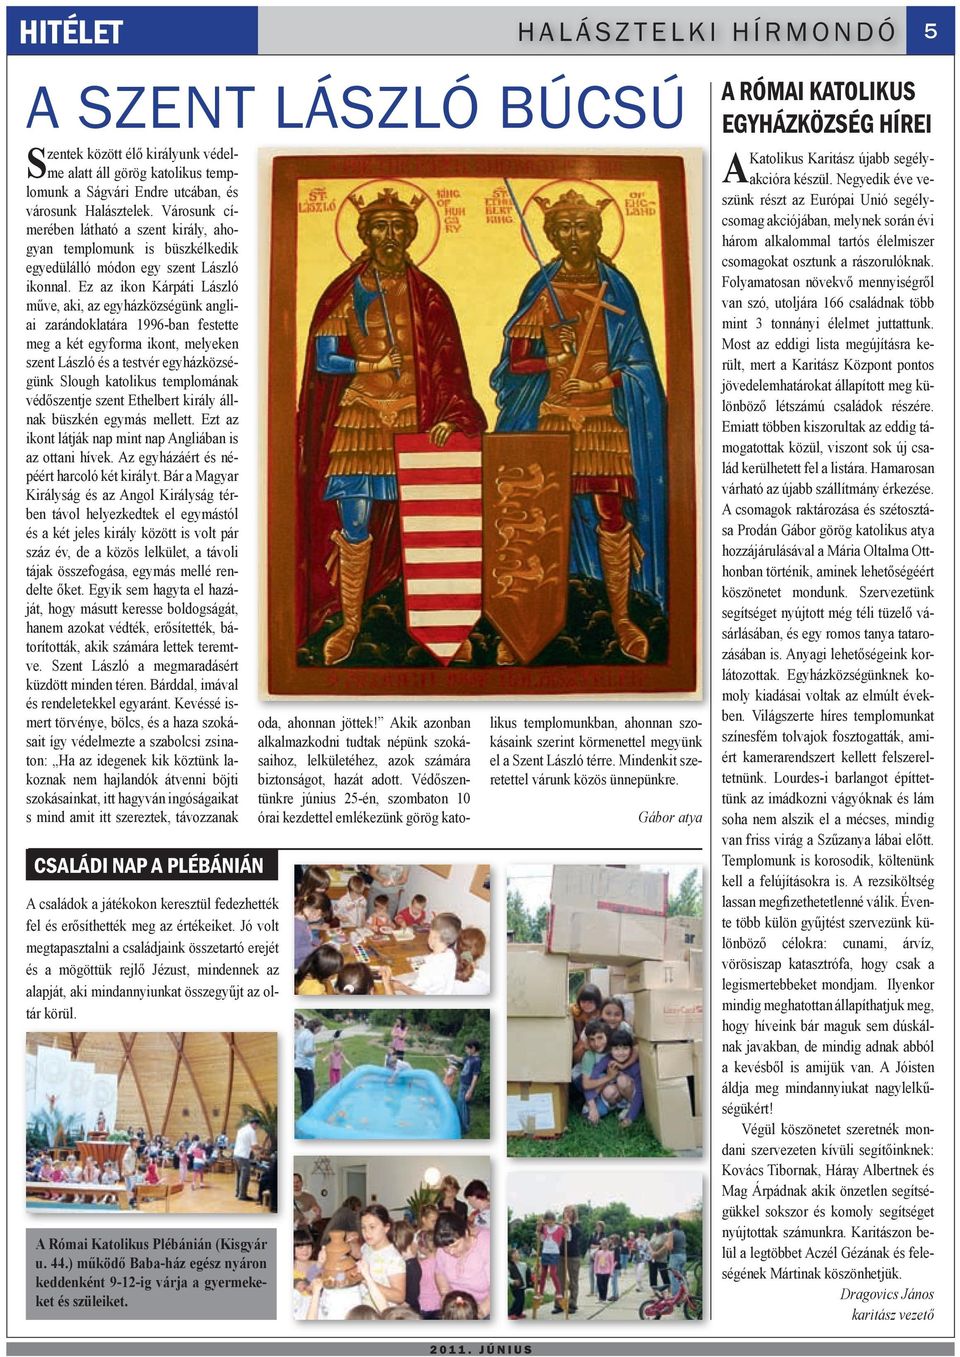 Ez az ikon Kárpáti László műve, aki, az egyházközségünk angliai zarándoklatára 1996-ban festette meg a két egyforma ikont, melyeken szent László és a testvér egyházközségünk Slough katolikus